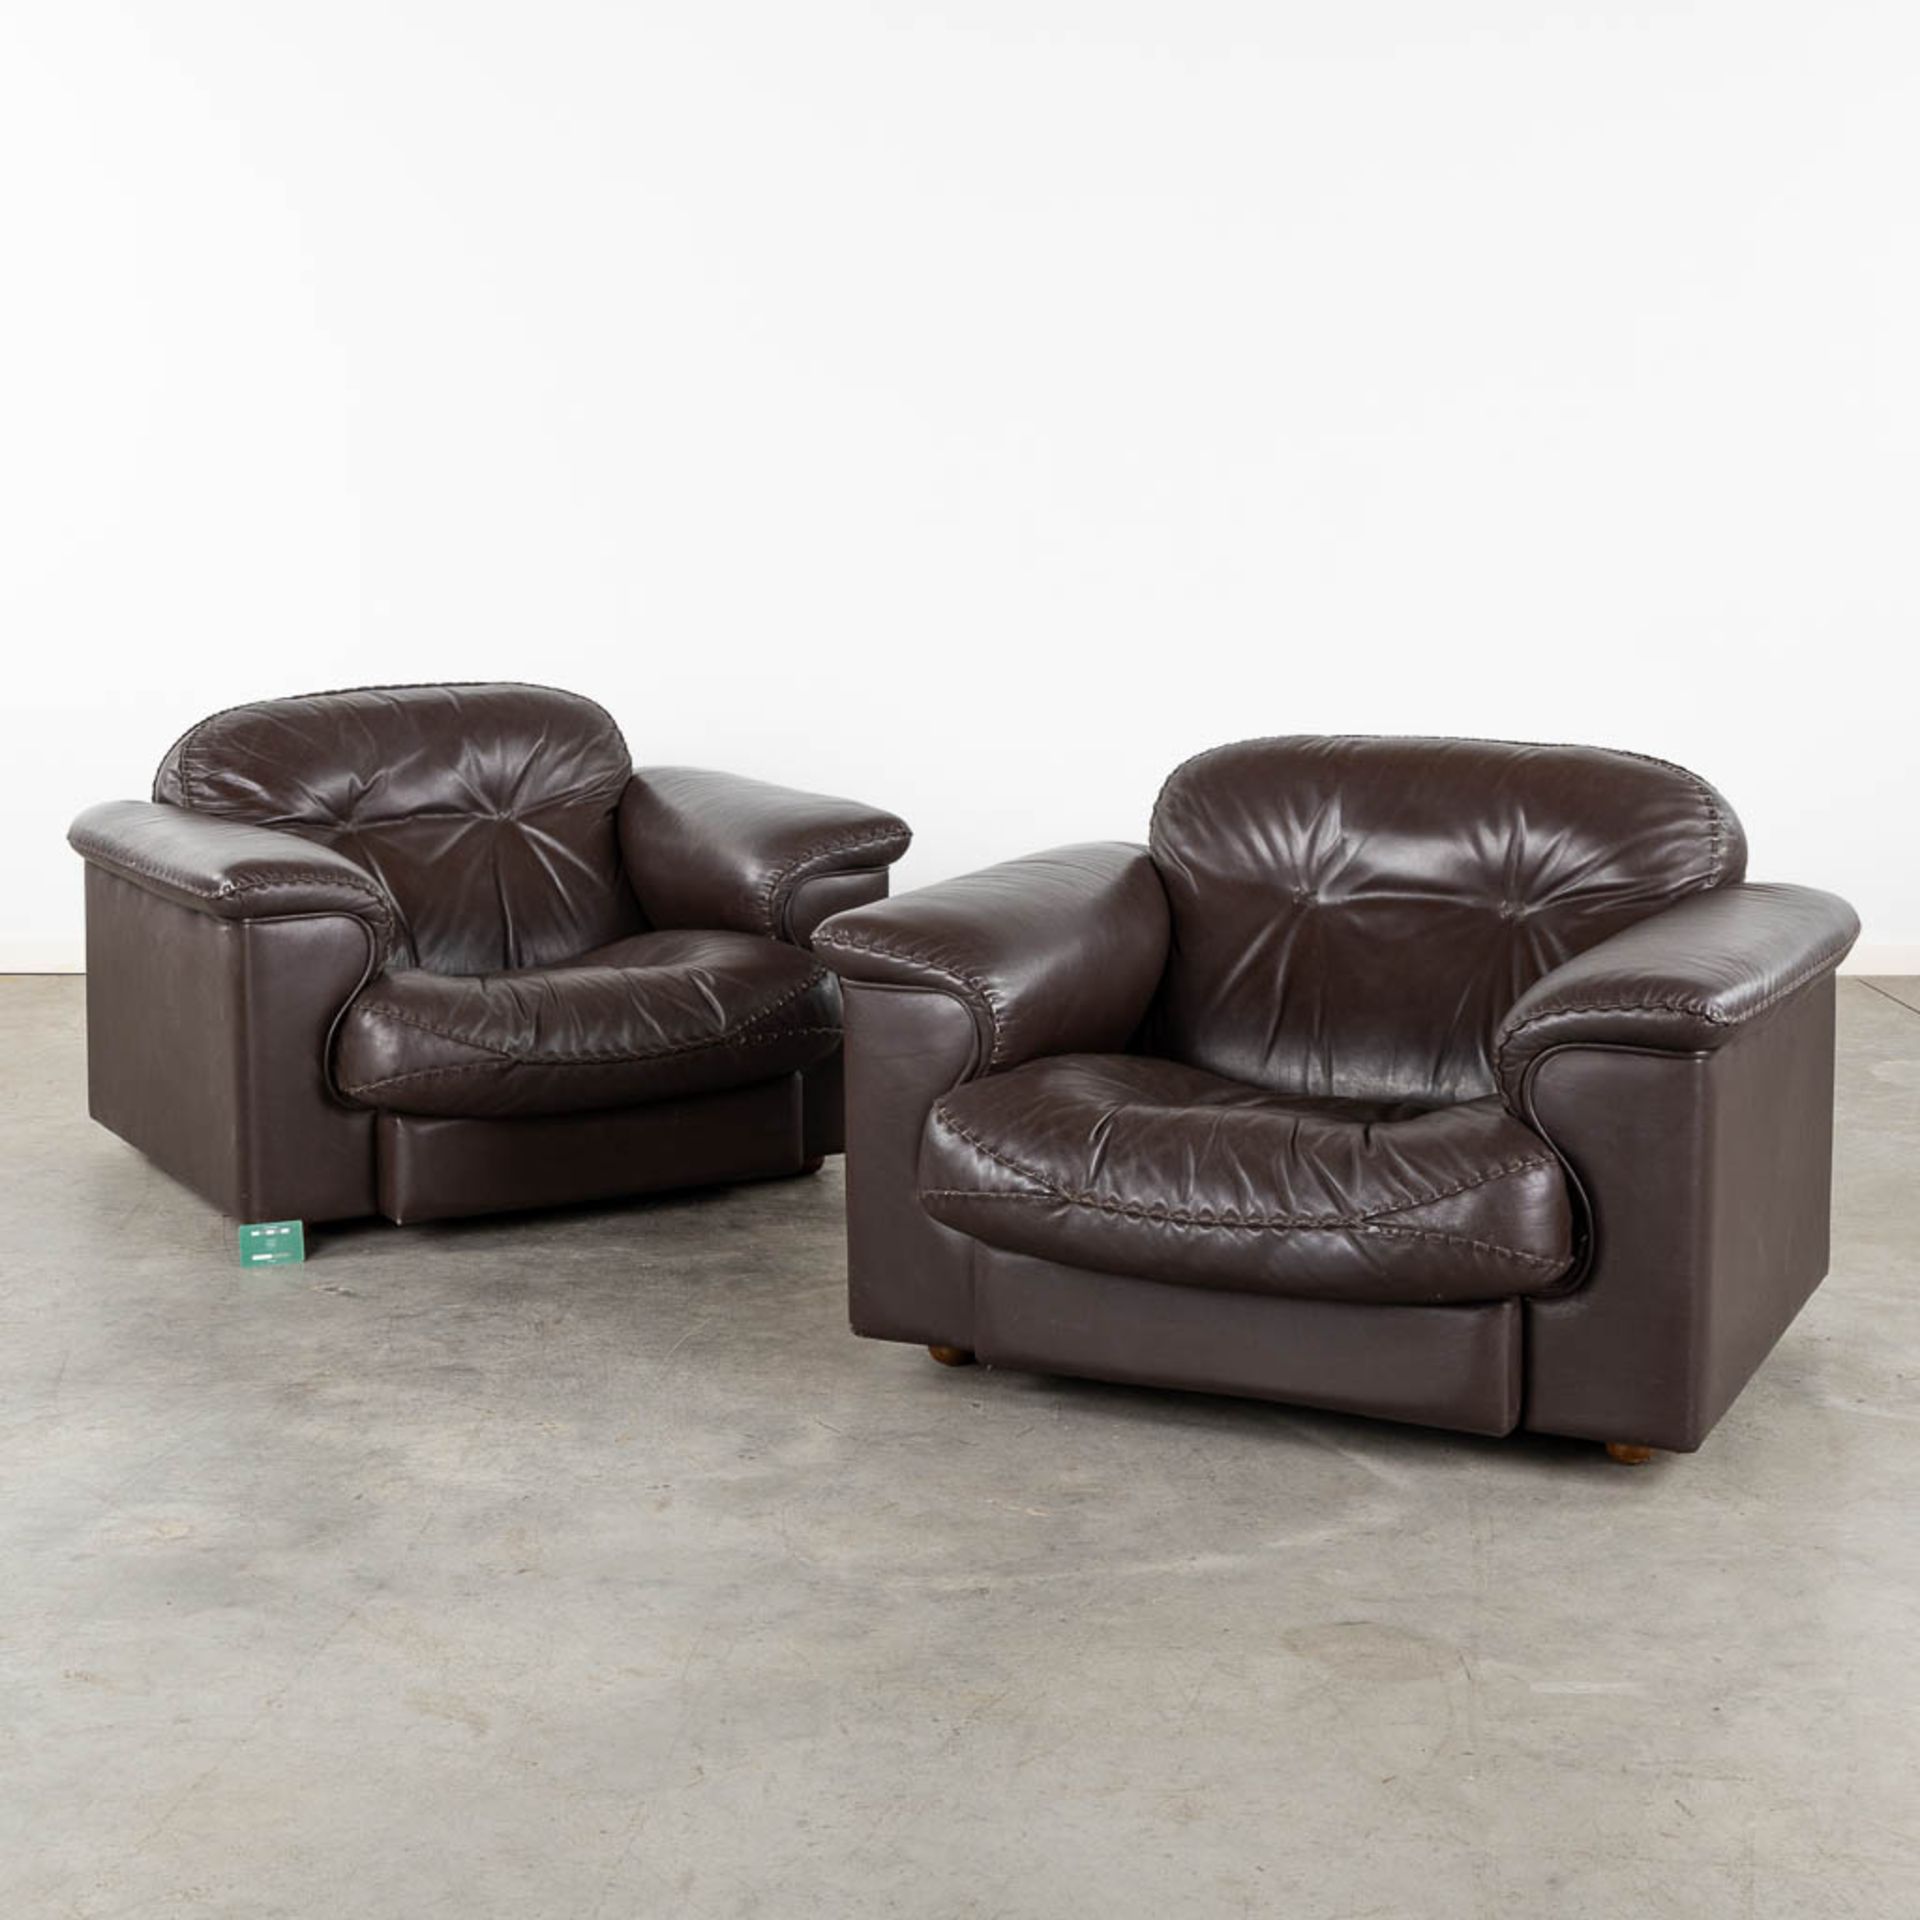 De Sede DS101, a pair of brown leather sofa's. (L:93 x W:108 x H:67 cm) - Bild 2 aus 9